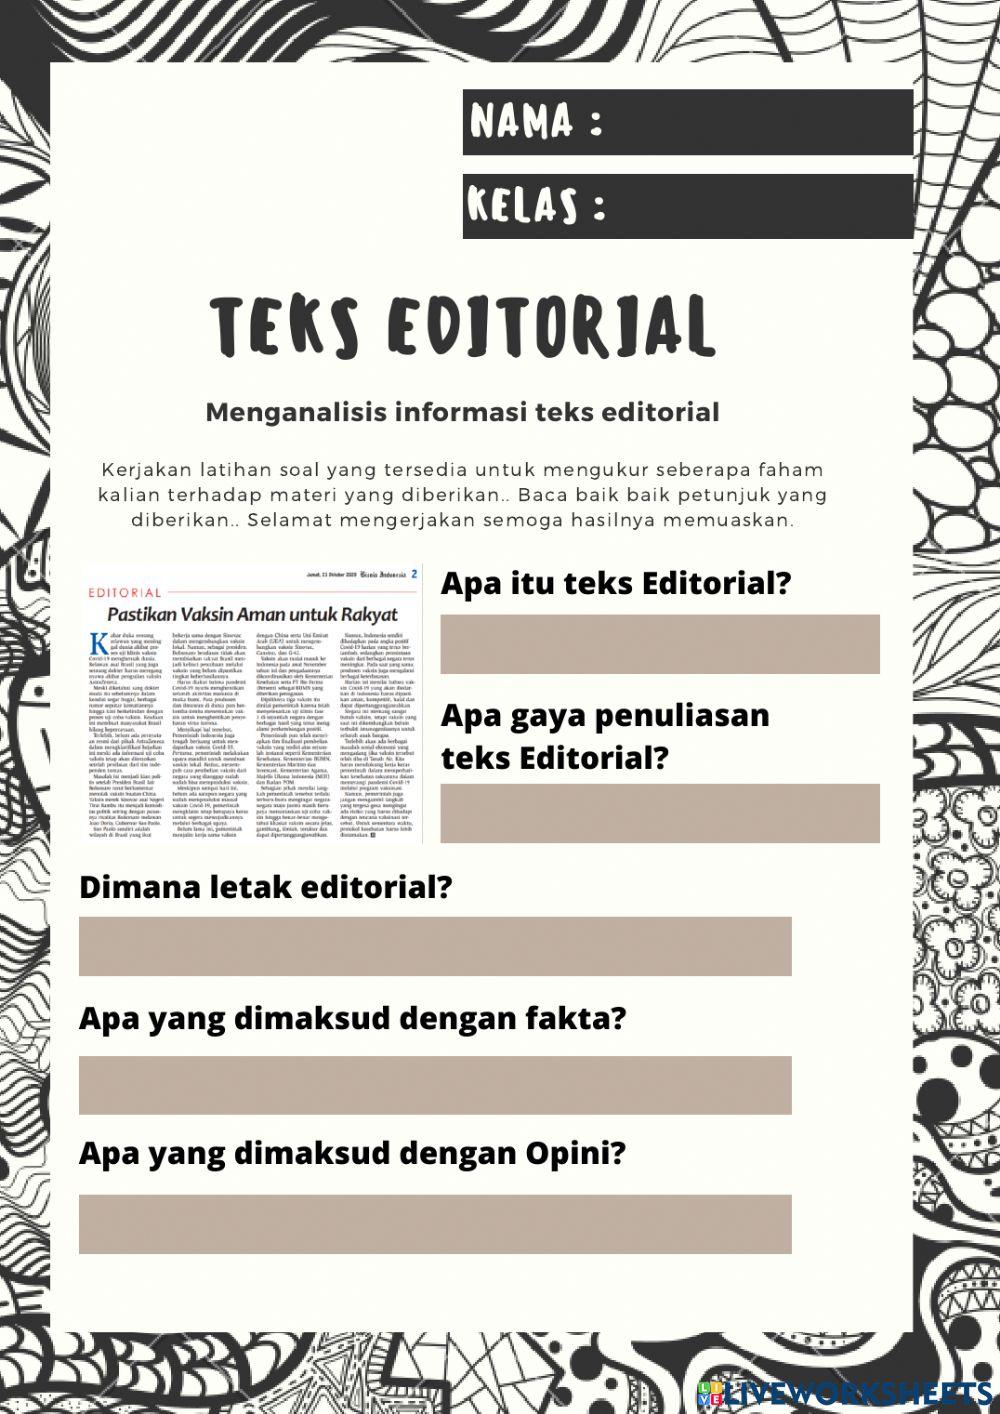 Teks editorial